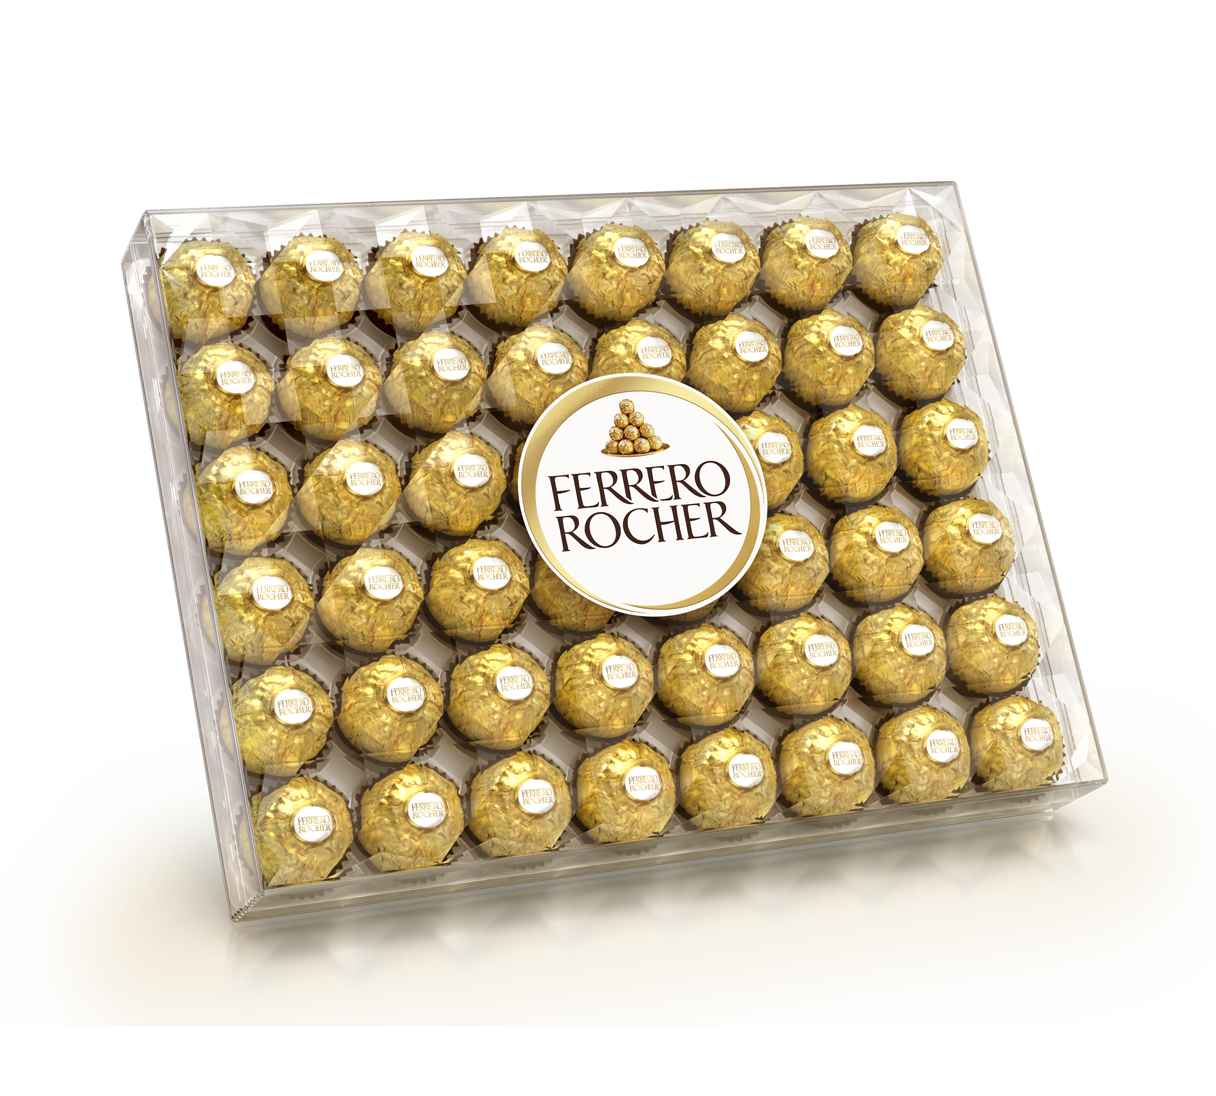 Ferrero Rocher Chocolate Gift Box at Rs 832.72/box | फेरेरो रोशर चॉकलेट in  New Delhi | ID: 17559004433